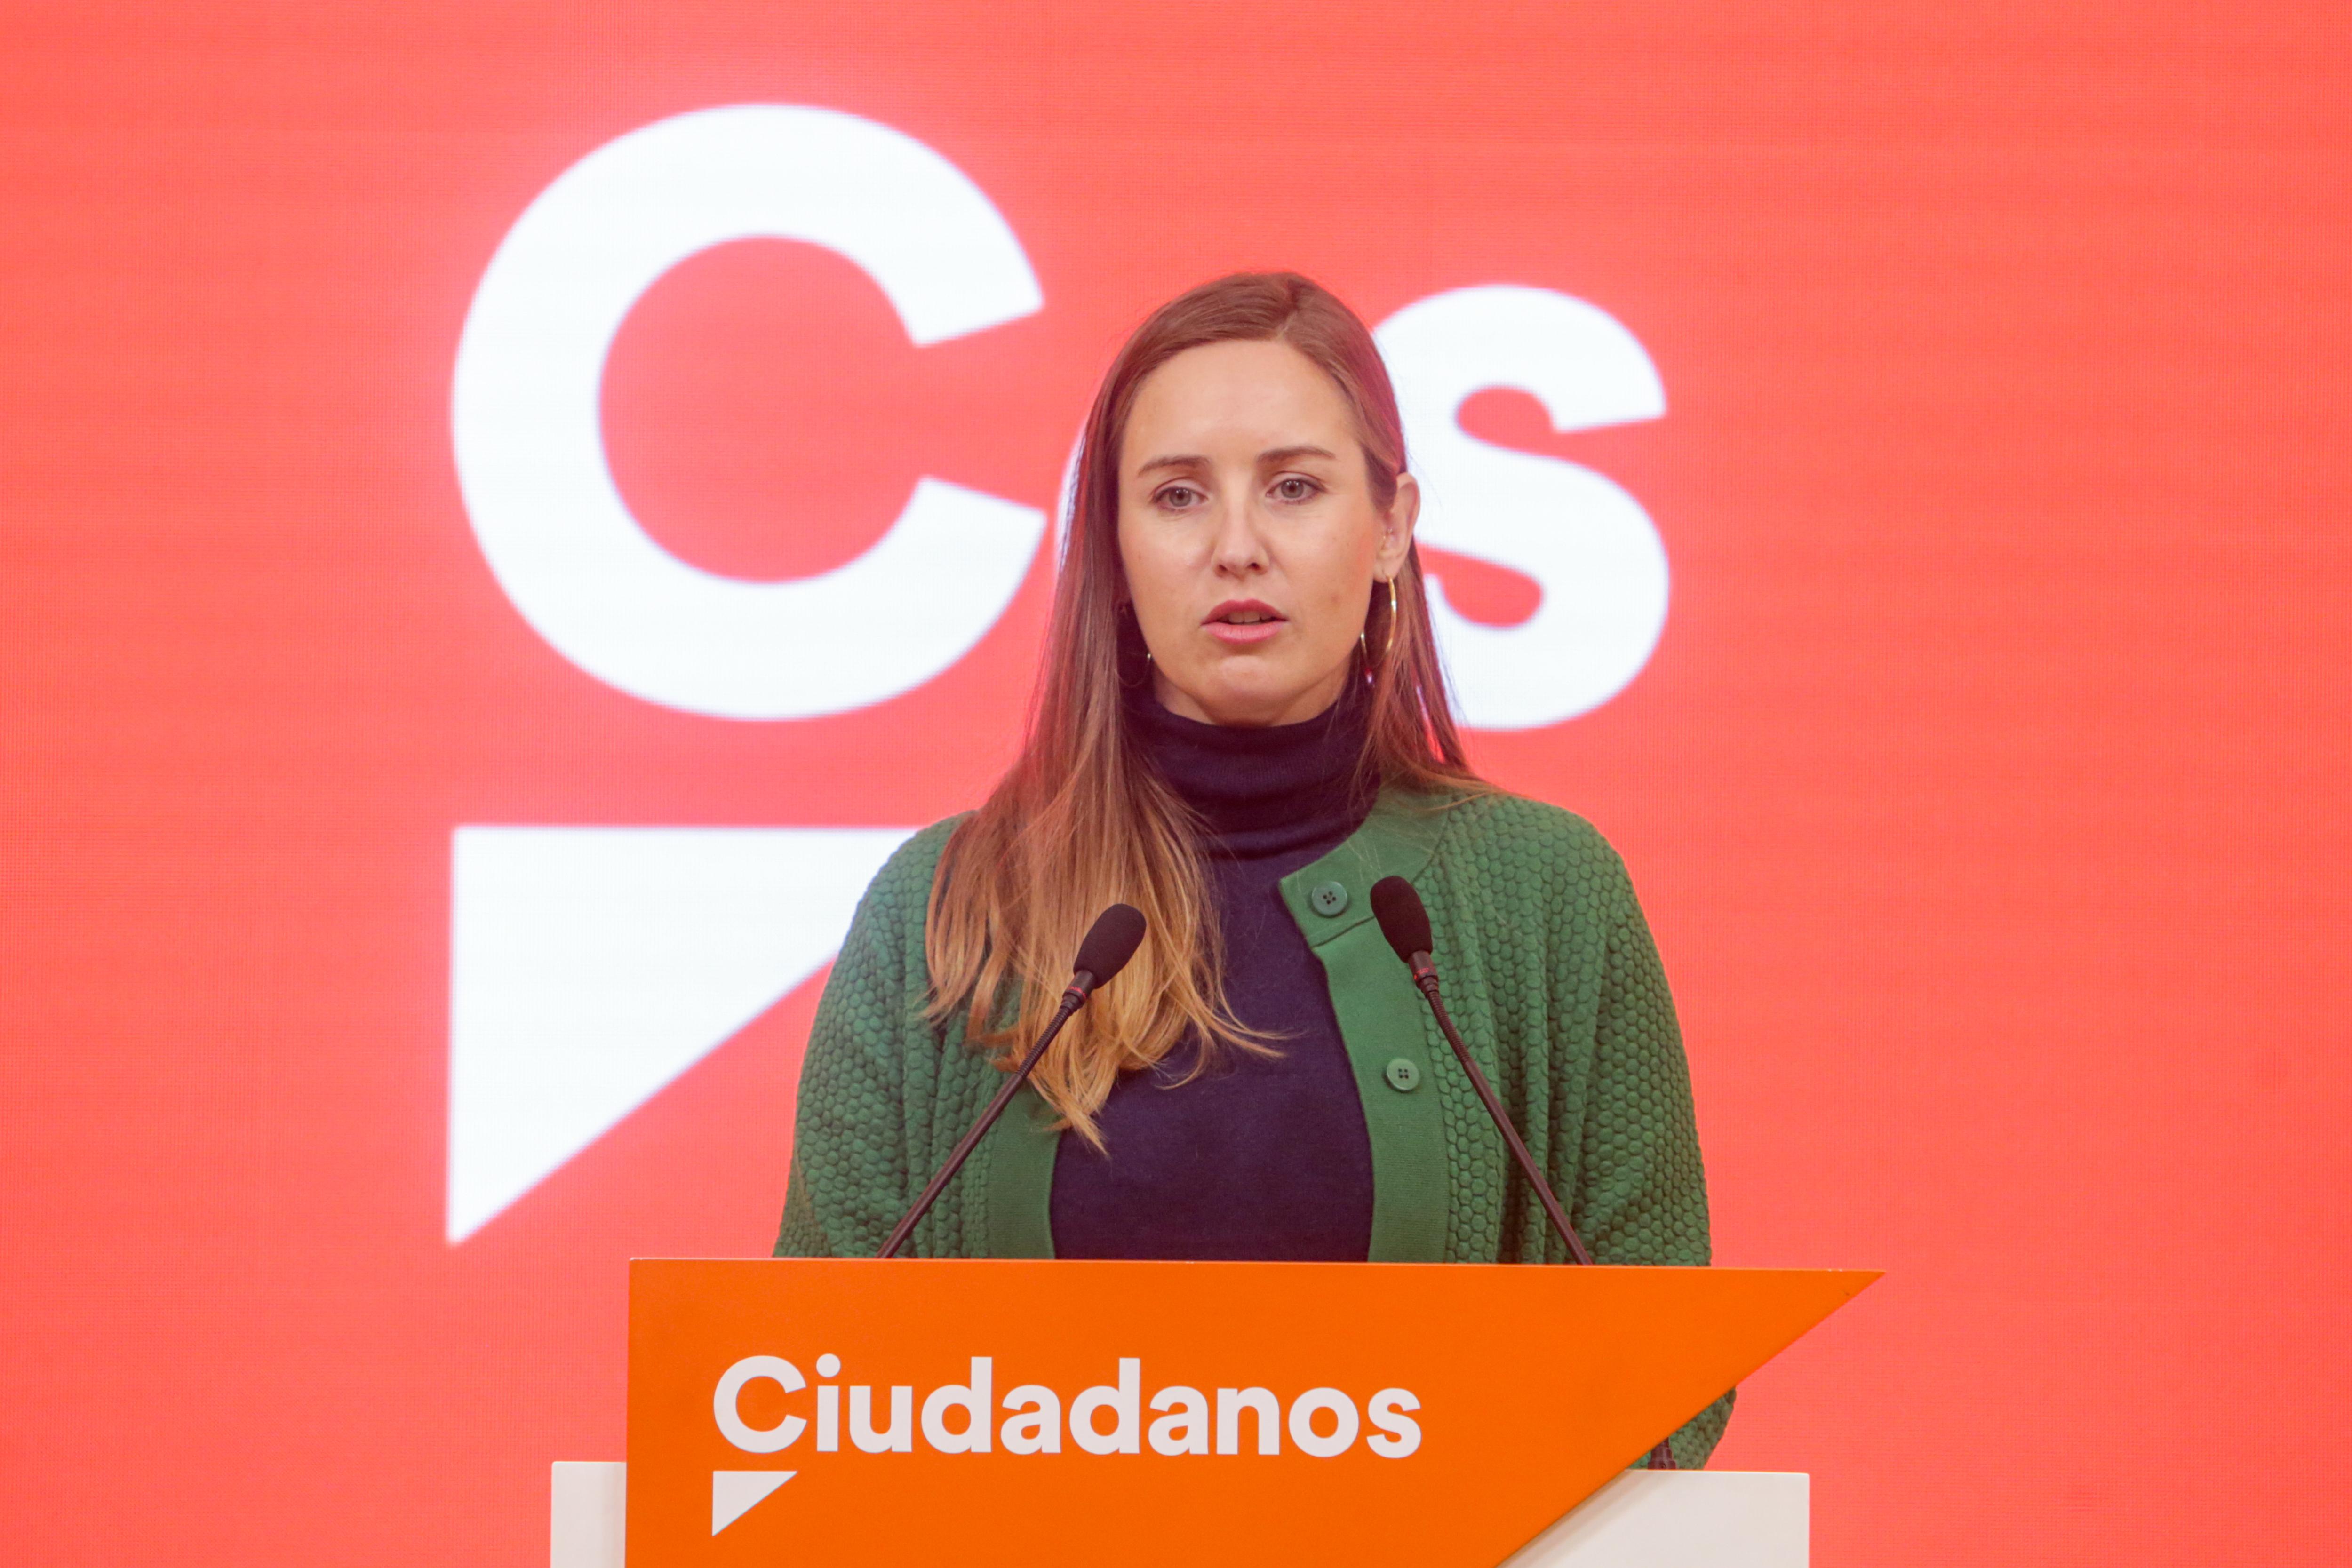 La portavoz de la Comisión Gestora de Ciudadanos Melisa Rodríguez. Fuente: EP.